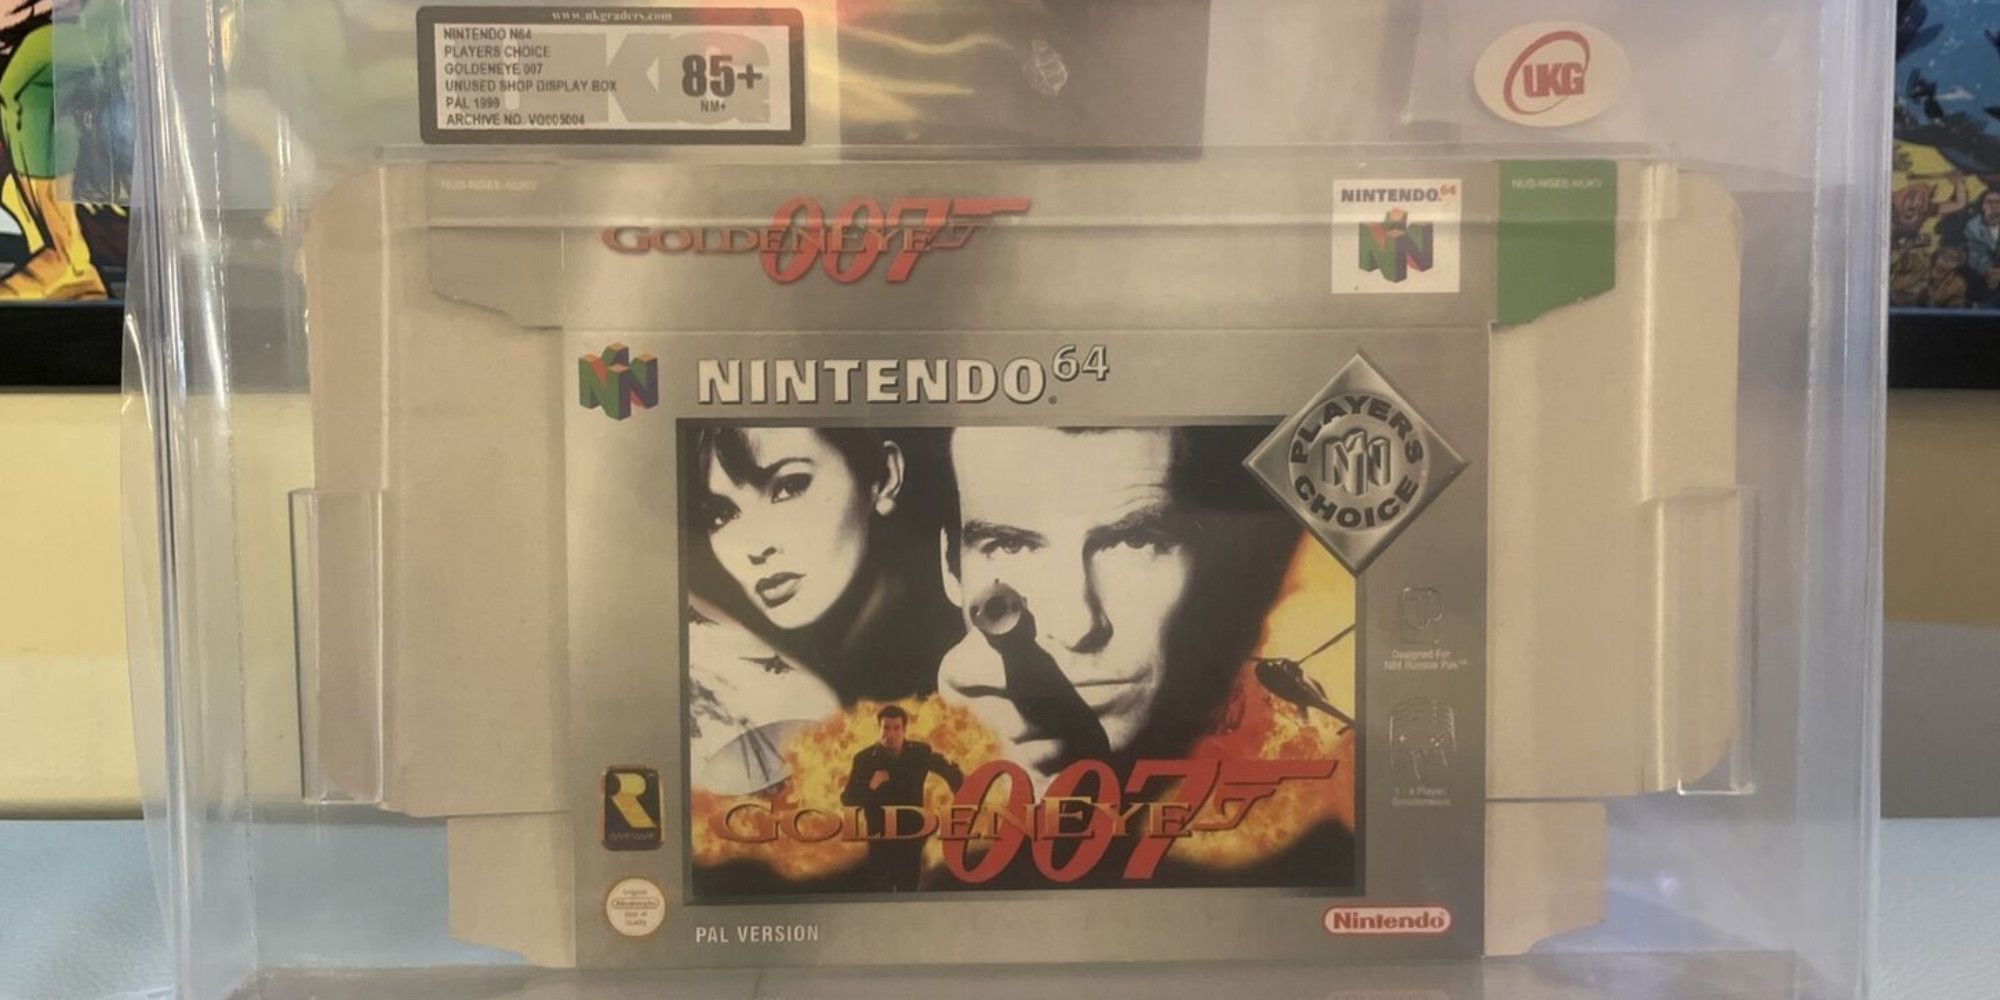 Item Box: Goldeneye (GoldenEye 007) - Nintendo Blast